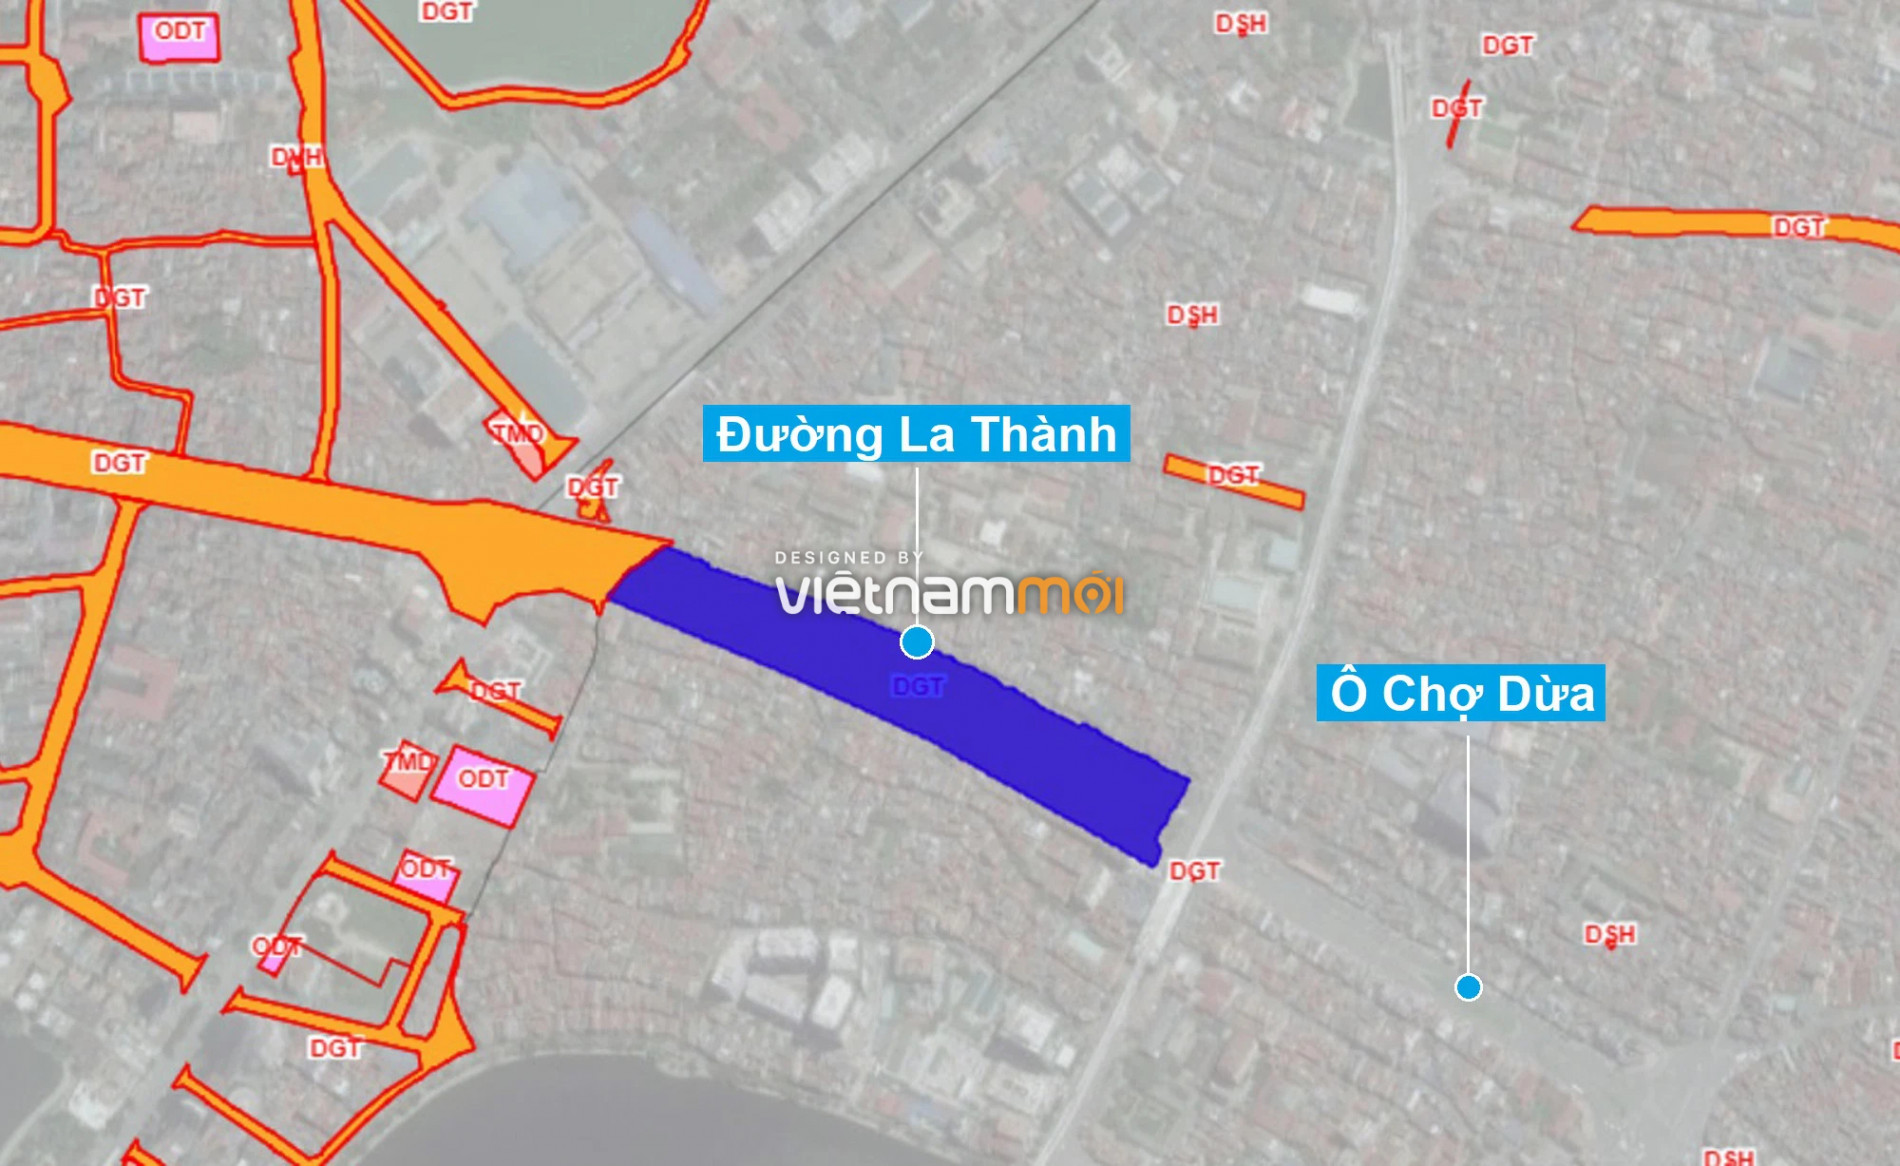 Những khu đất sắp thu hồi để mở đường ở quận Đống Đa, Hà Nội (phần 4) - Ảnh 14.